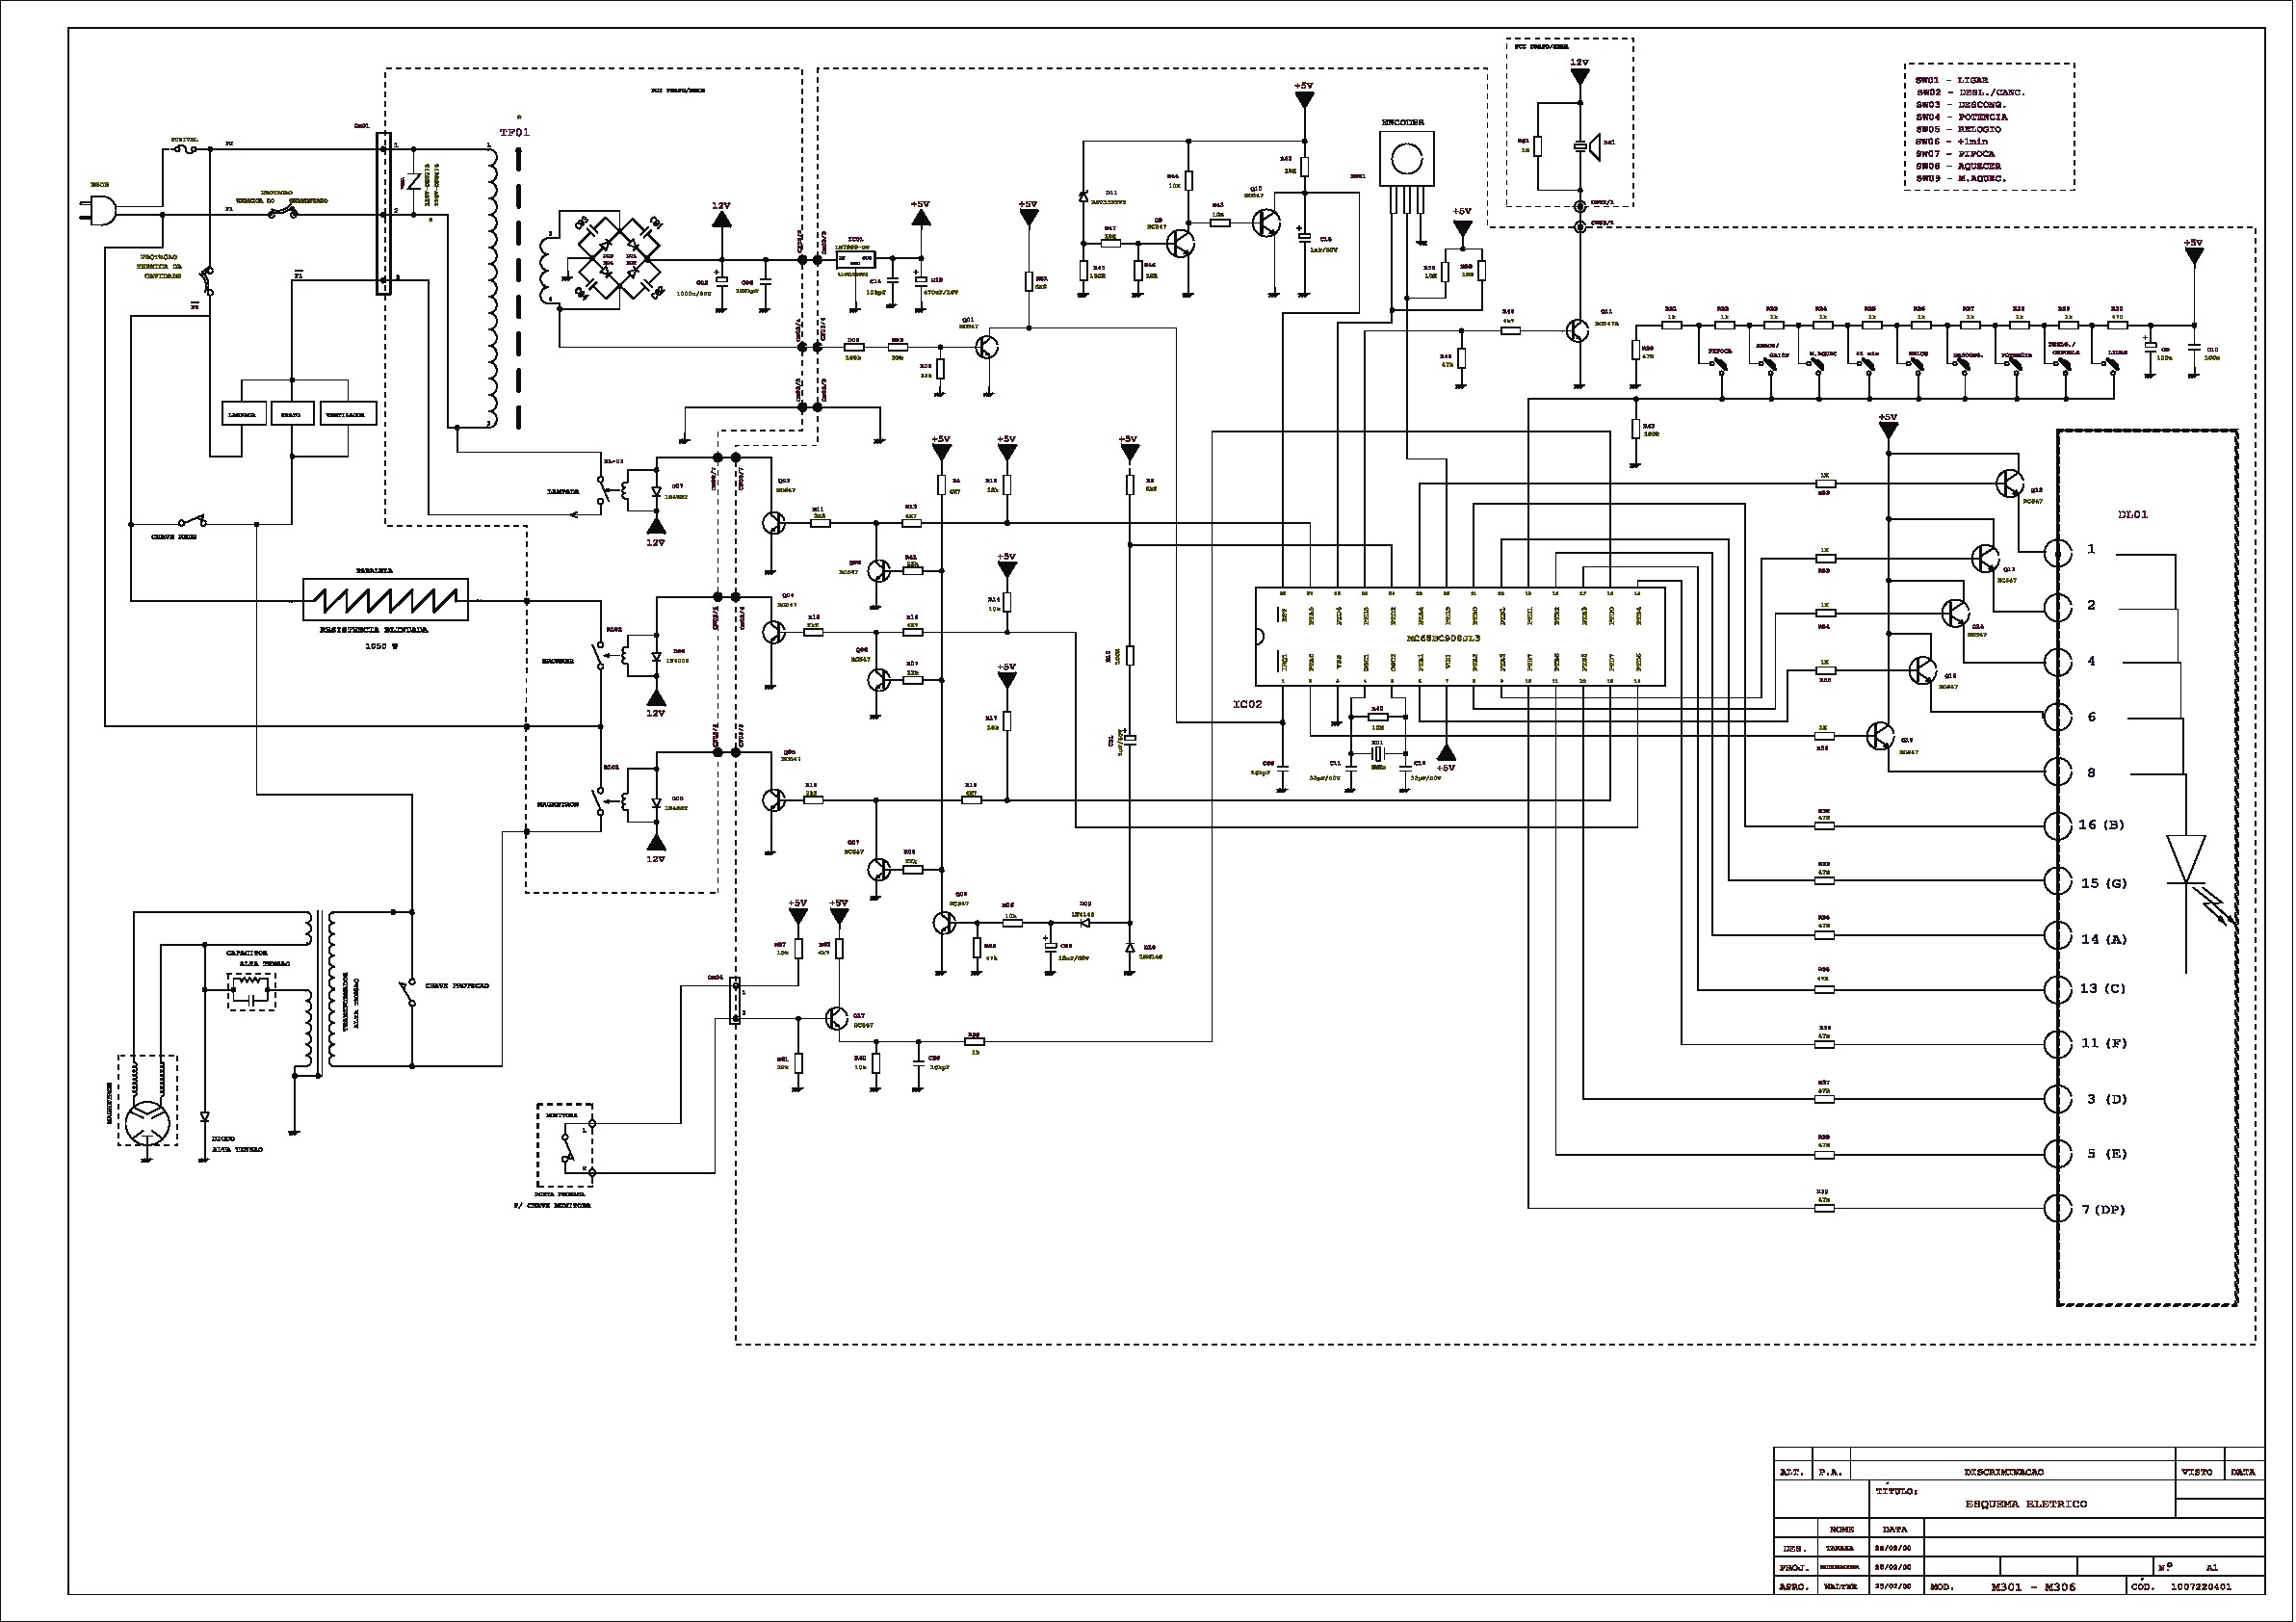 CCE Microonda MT30 1 Diagrama Esquematico.pdf